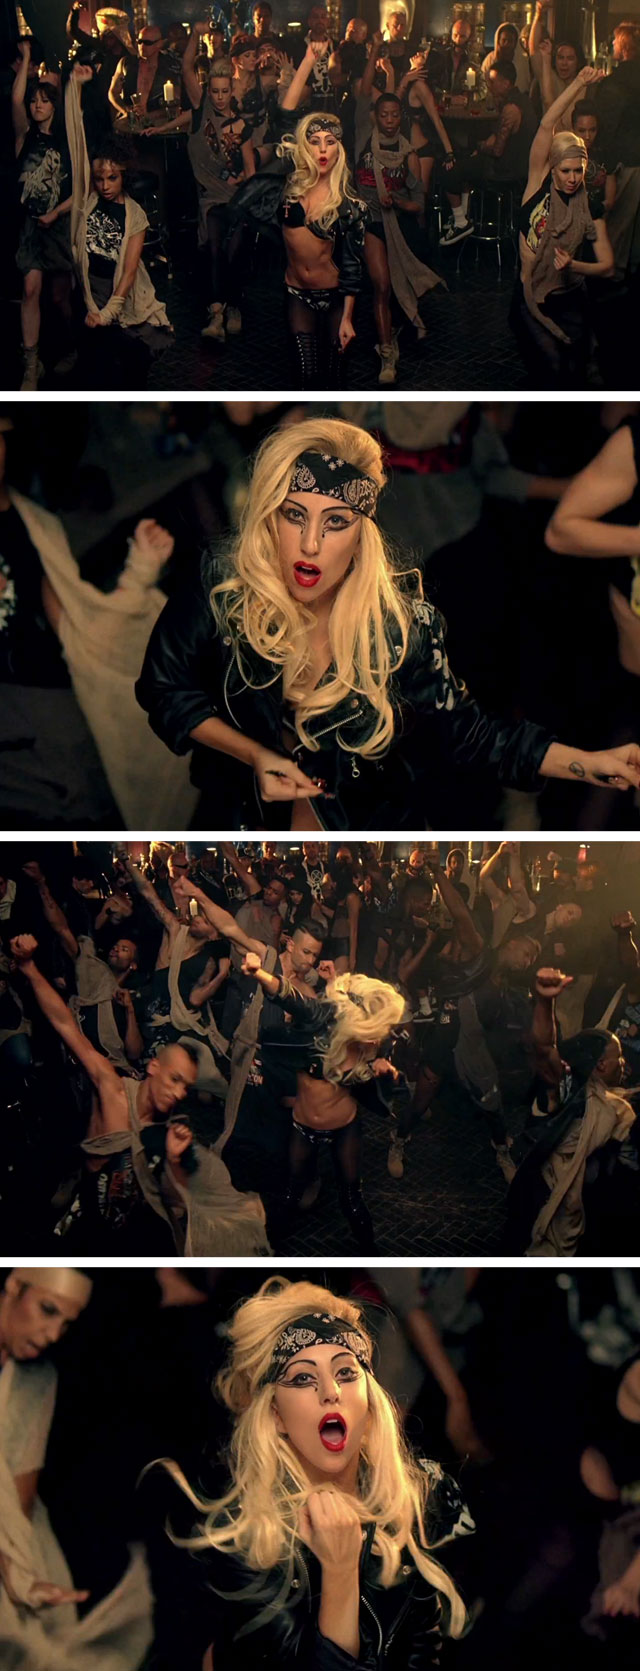 Lady-Gaga-Judas-Recap-dance-sequence